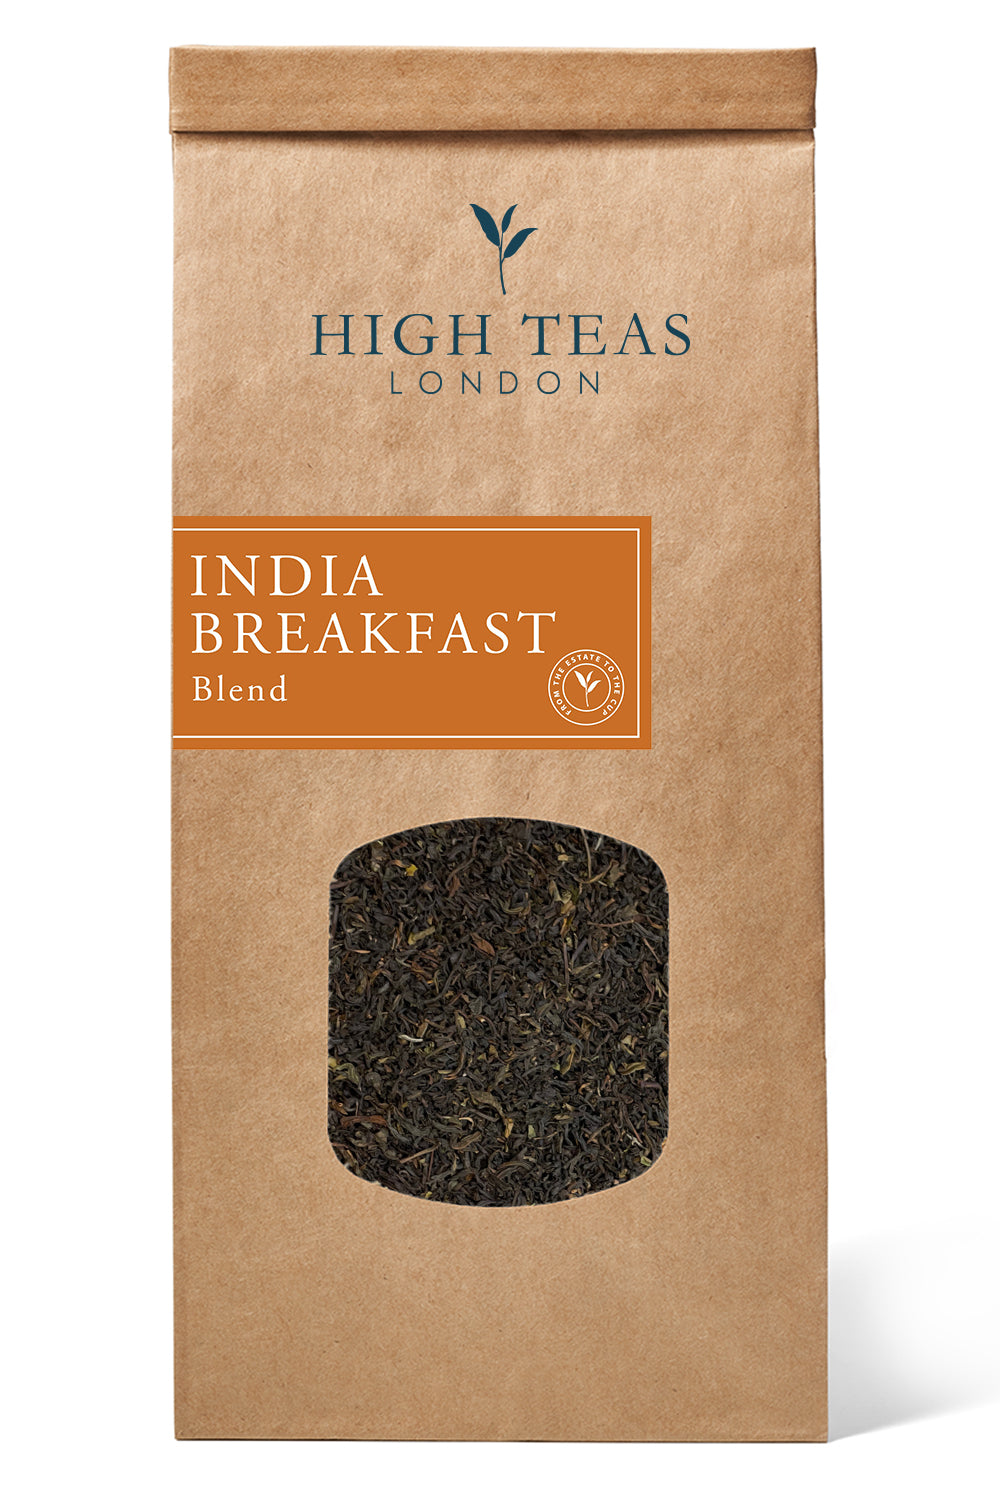 India Breakfast Blend-250g-Loose Leaf Tea-High Teas